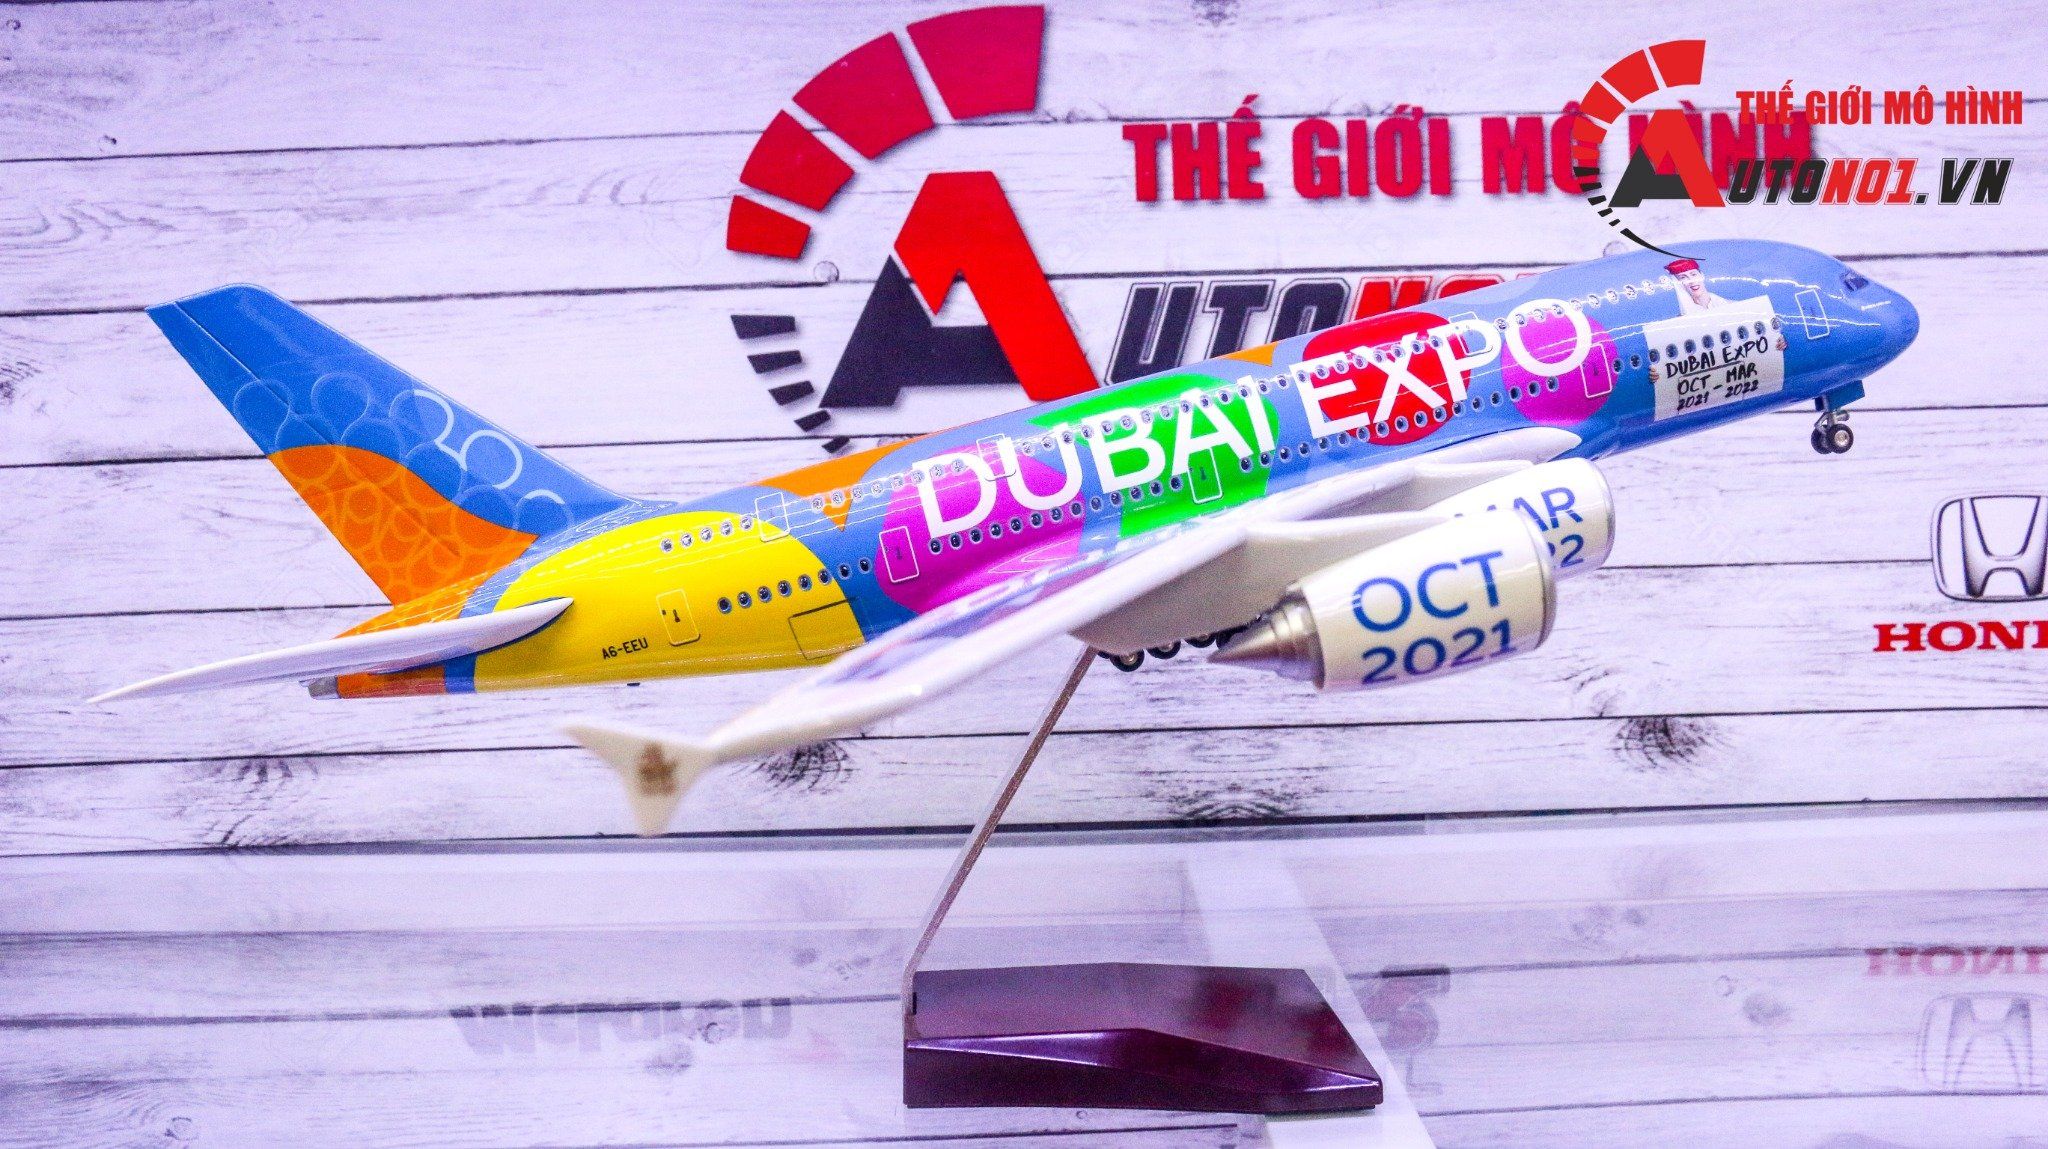  Mô hình máy bay Be part of the magic Dubai expo 2021-2022 Airbus A380 47cm 1:200 có đèn led tự động theo tiếng vỗ tay hoặc chạm MB47016 